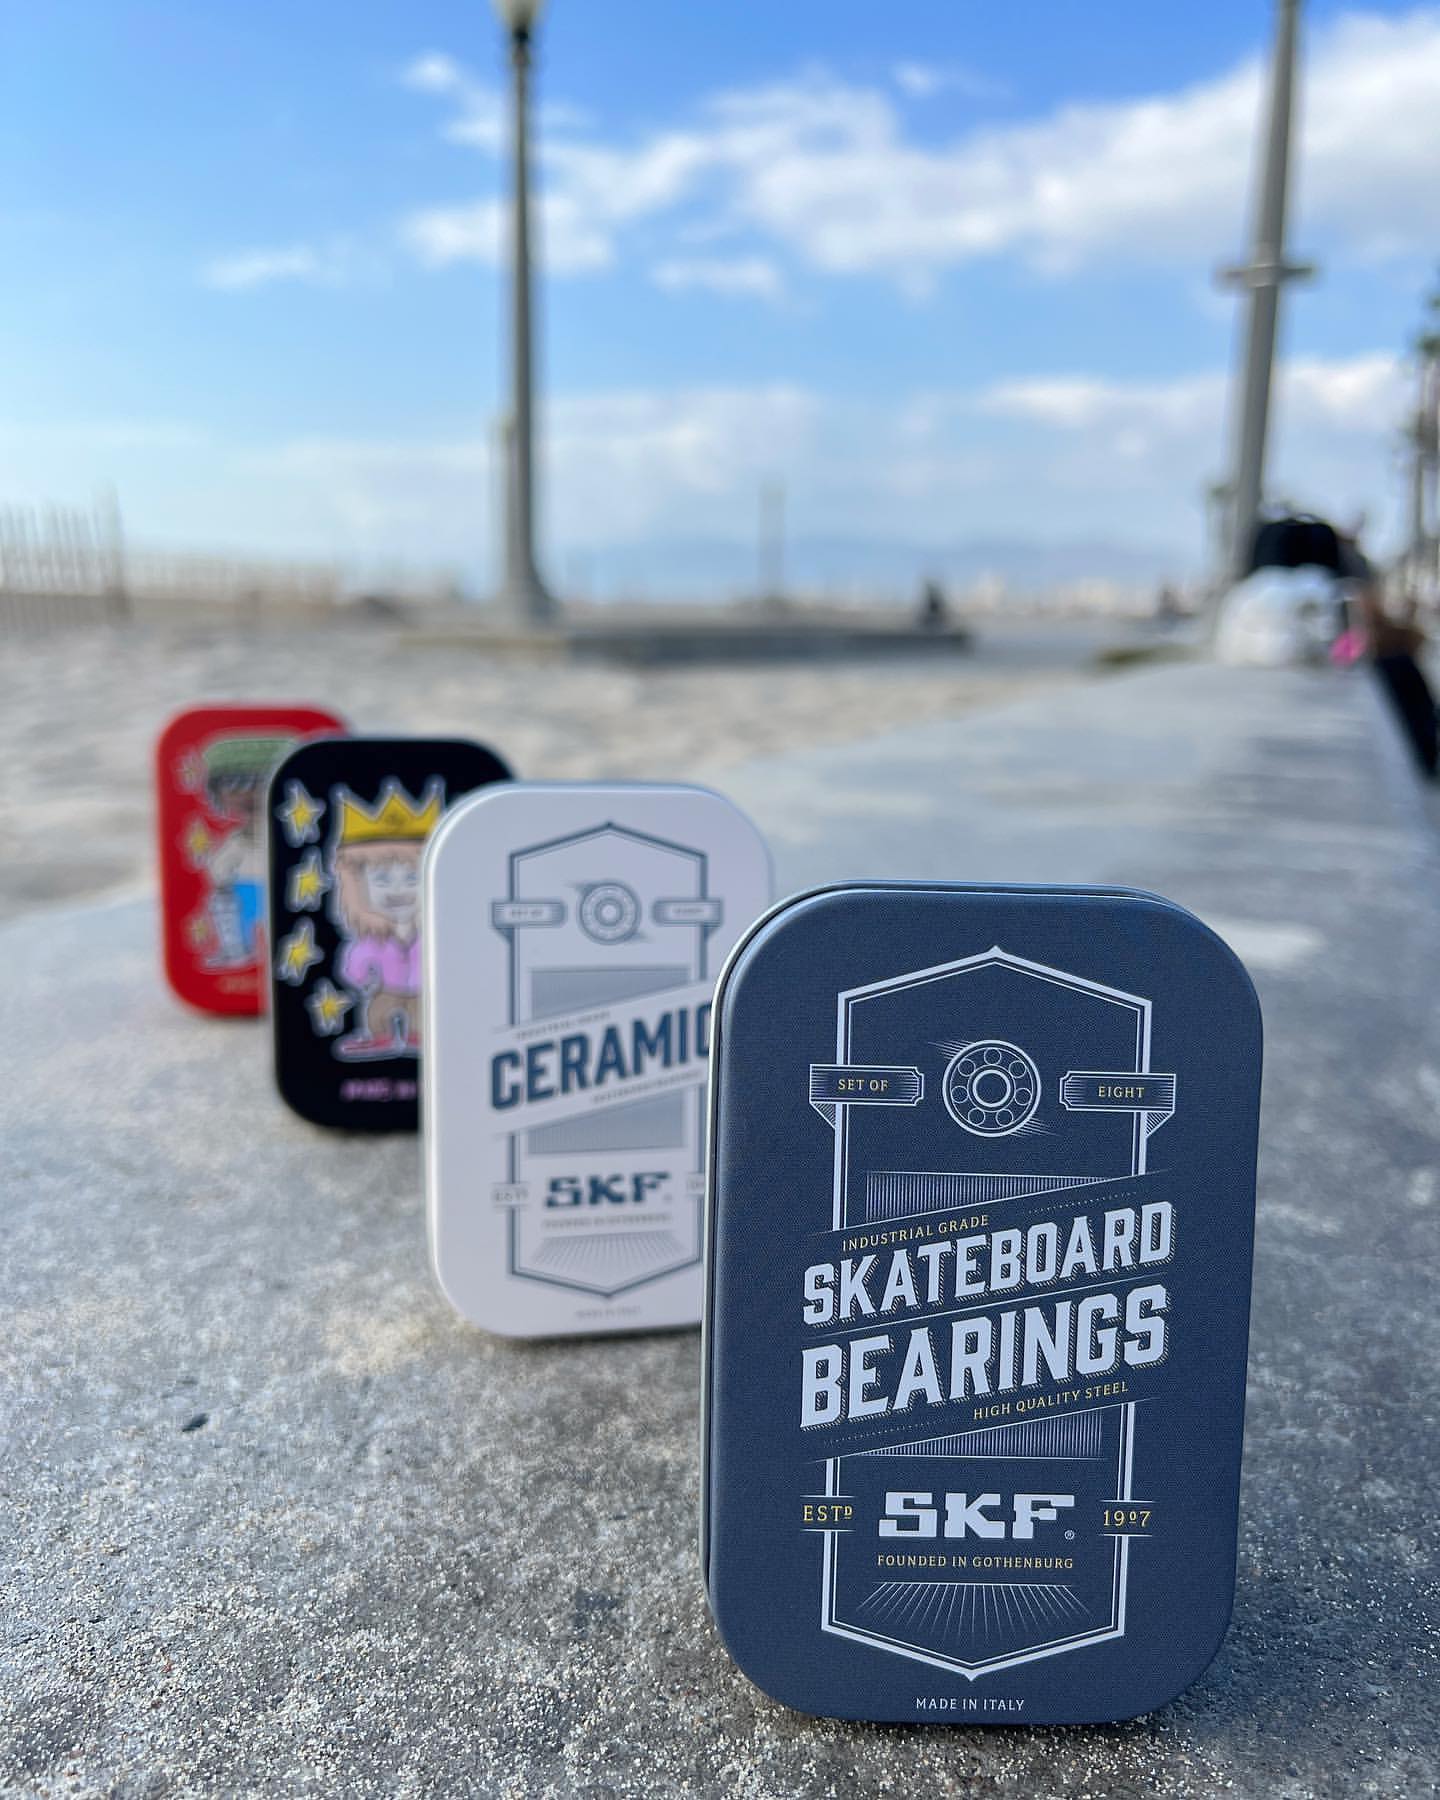 6/17 AM11:00〜@skf_skateboarding スウェーデンを拠点とし、1907年に創業した老舗ベアリングメーカーSKFから、スケートボードベアリングが新たに発売となります。SKF社は産業界において世界最大規模のシェアを誇るカンパニーであり、ベアリング・エンジニアリング事業においては、世界中のさまざまな産業向けに精密に設計された底摩擦ベアリングを製造しています。そのベアリングは、航空機メーカーやフェラーリのF1チーム、さらにはNASAなどにまで採用されるほどの高品質を誇っています。スケートボード向けの製品は全てイタリアで生産されており、そのハイグレードなベアリングには、多くの一流スケーターが賛同しています。Louie LopezOskar RozenbergIshod WairKader SyllaTiago LemosAlexis SabloneBeatrice Domond#skfbearings #instantskateshop